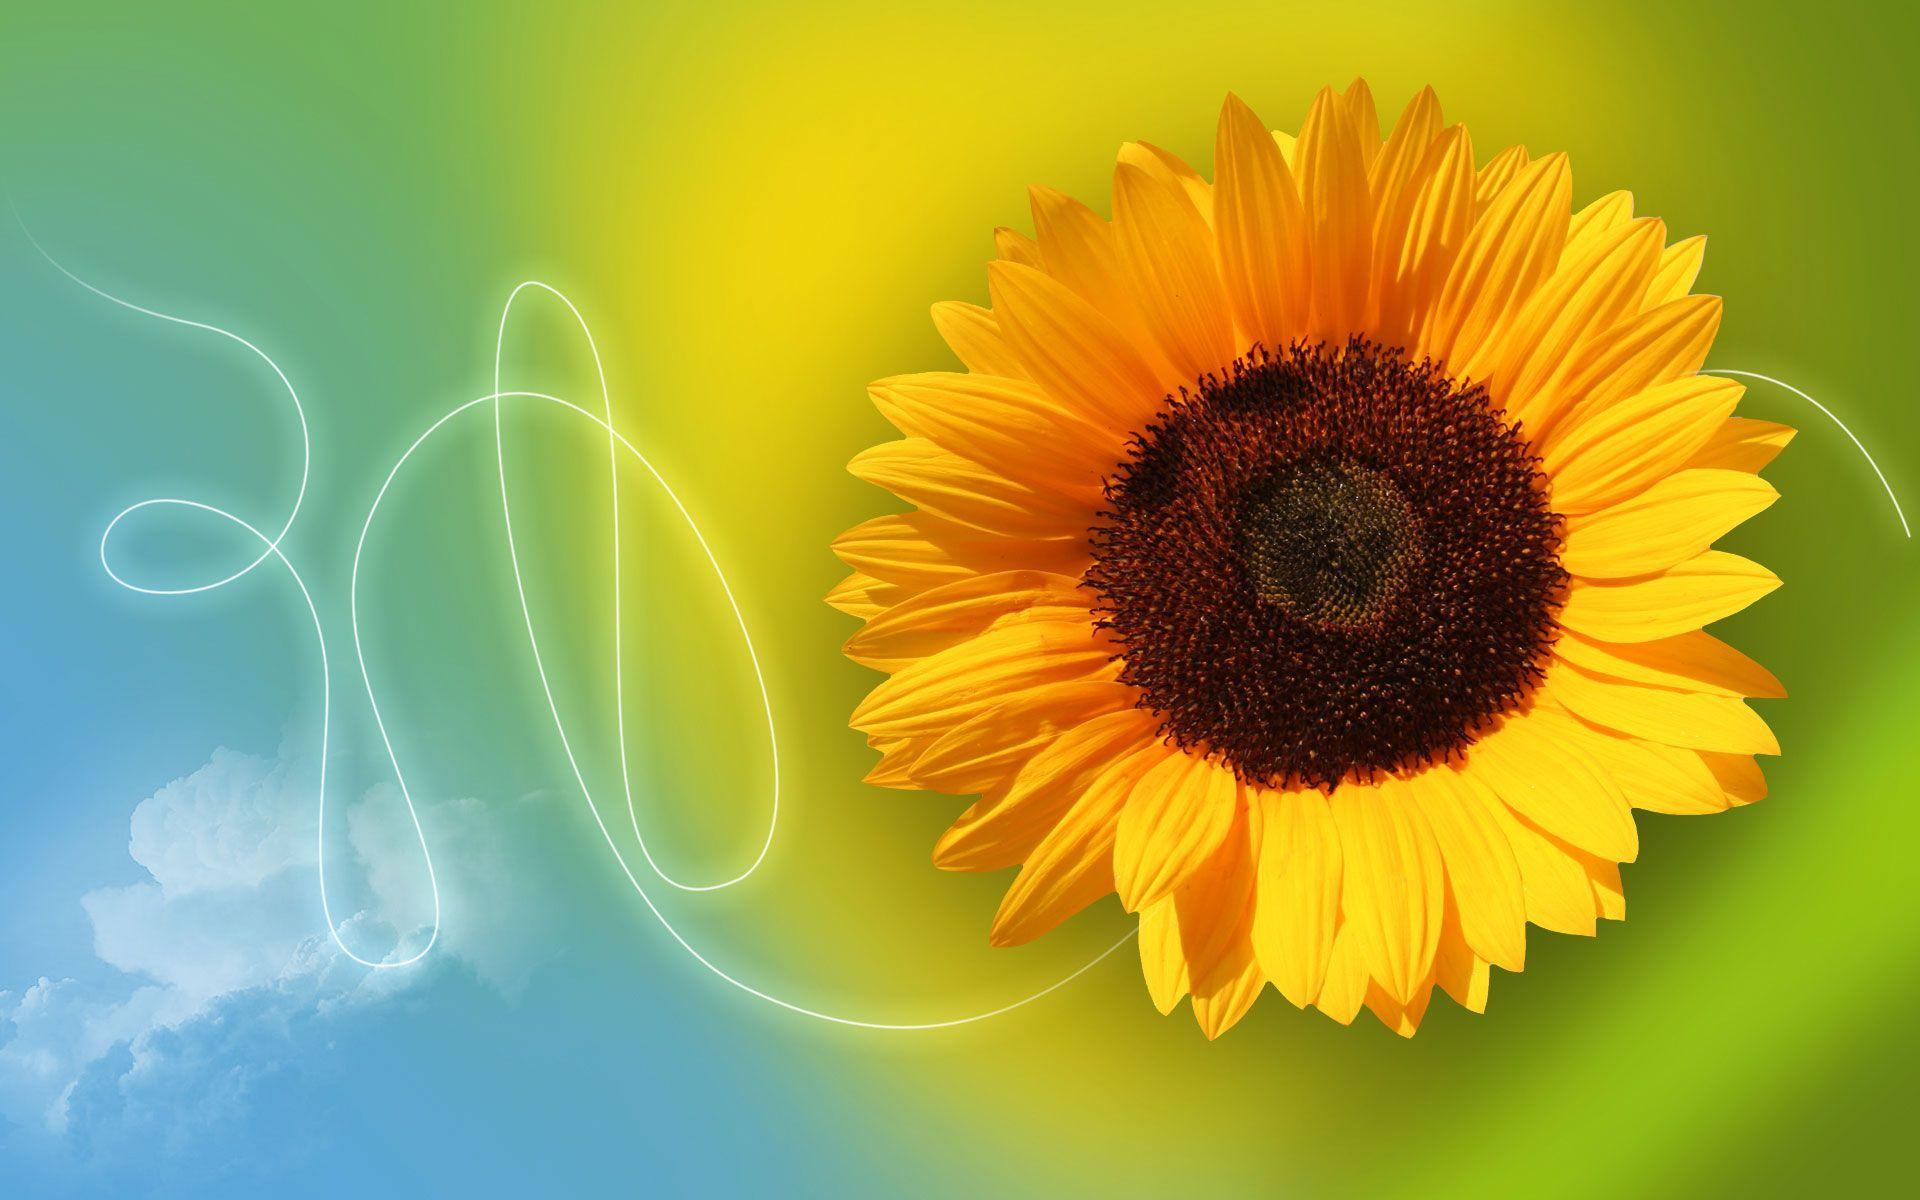 Hd Yellow Sunflower Wallpaper - High Resolution Sunflower Desktop Wallpaper Hd , HD Wallpaper & Backgrounds